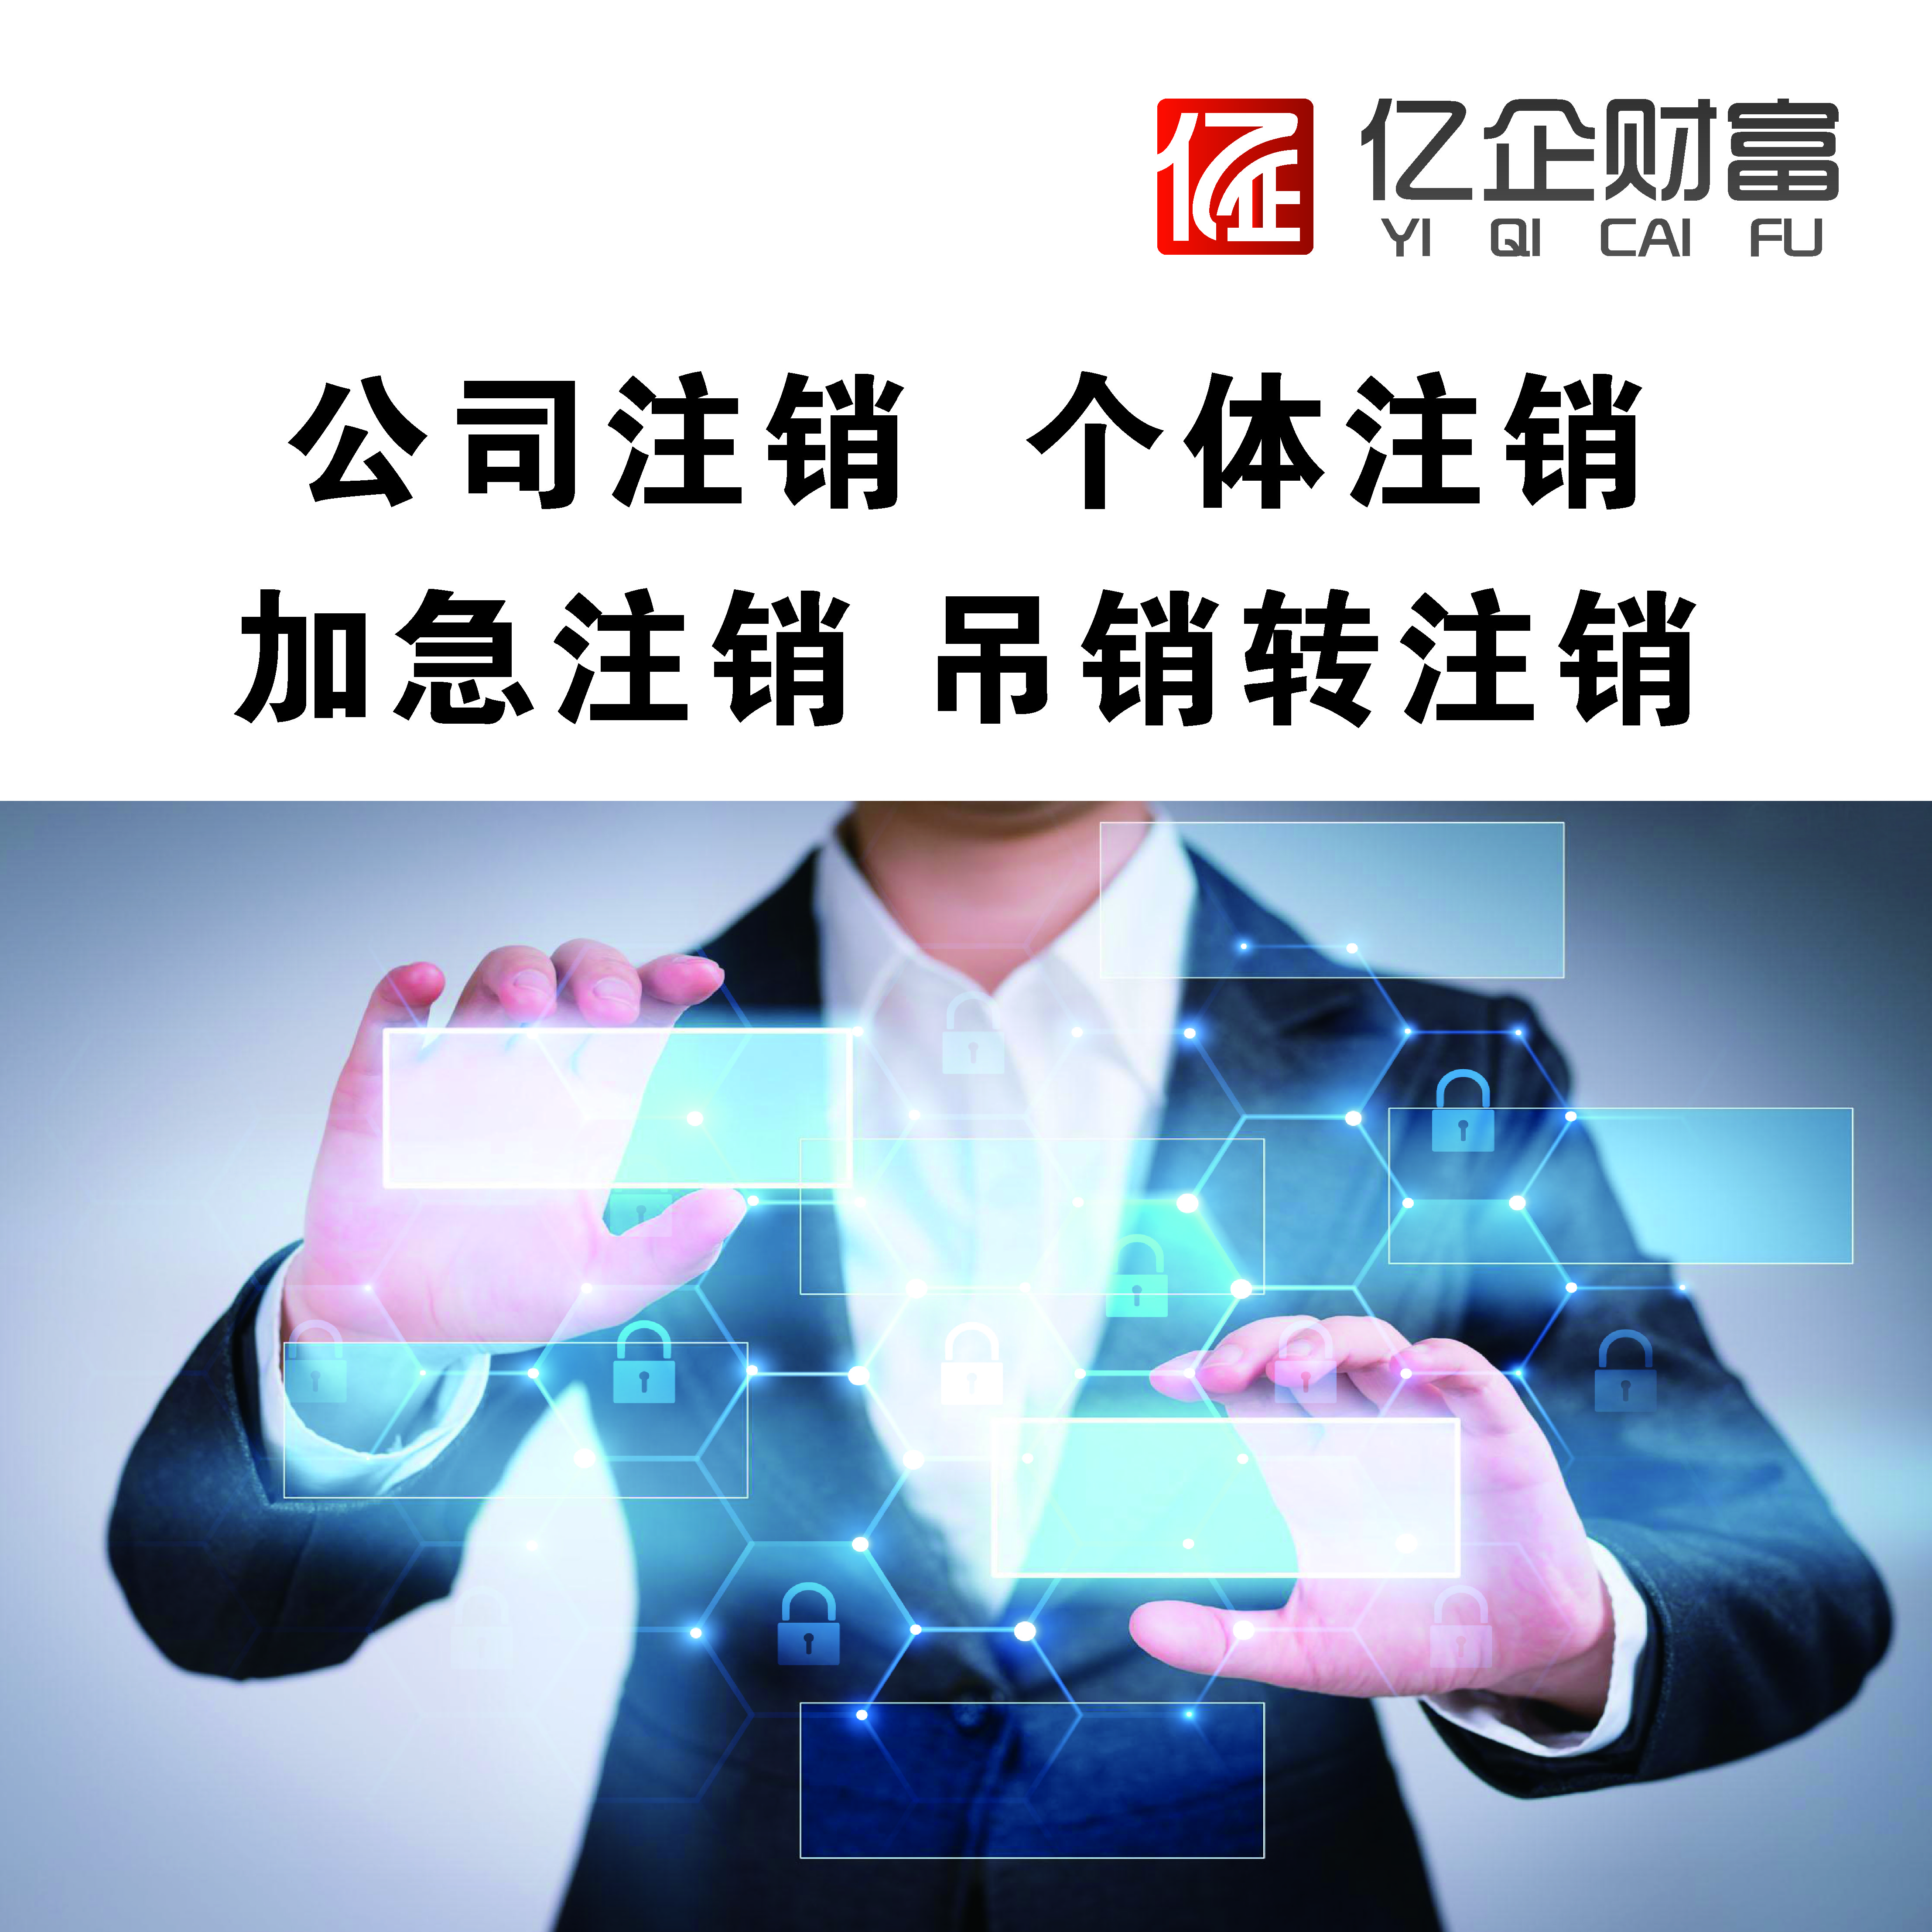 北京注销公司网上办理 流程及费用一览表